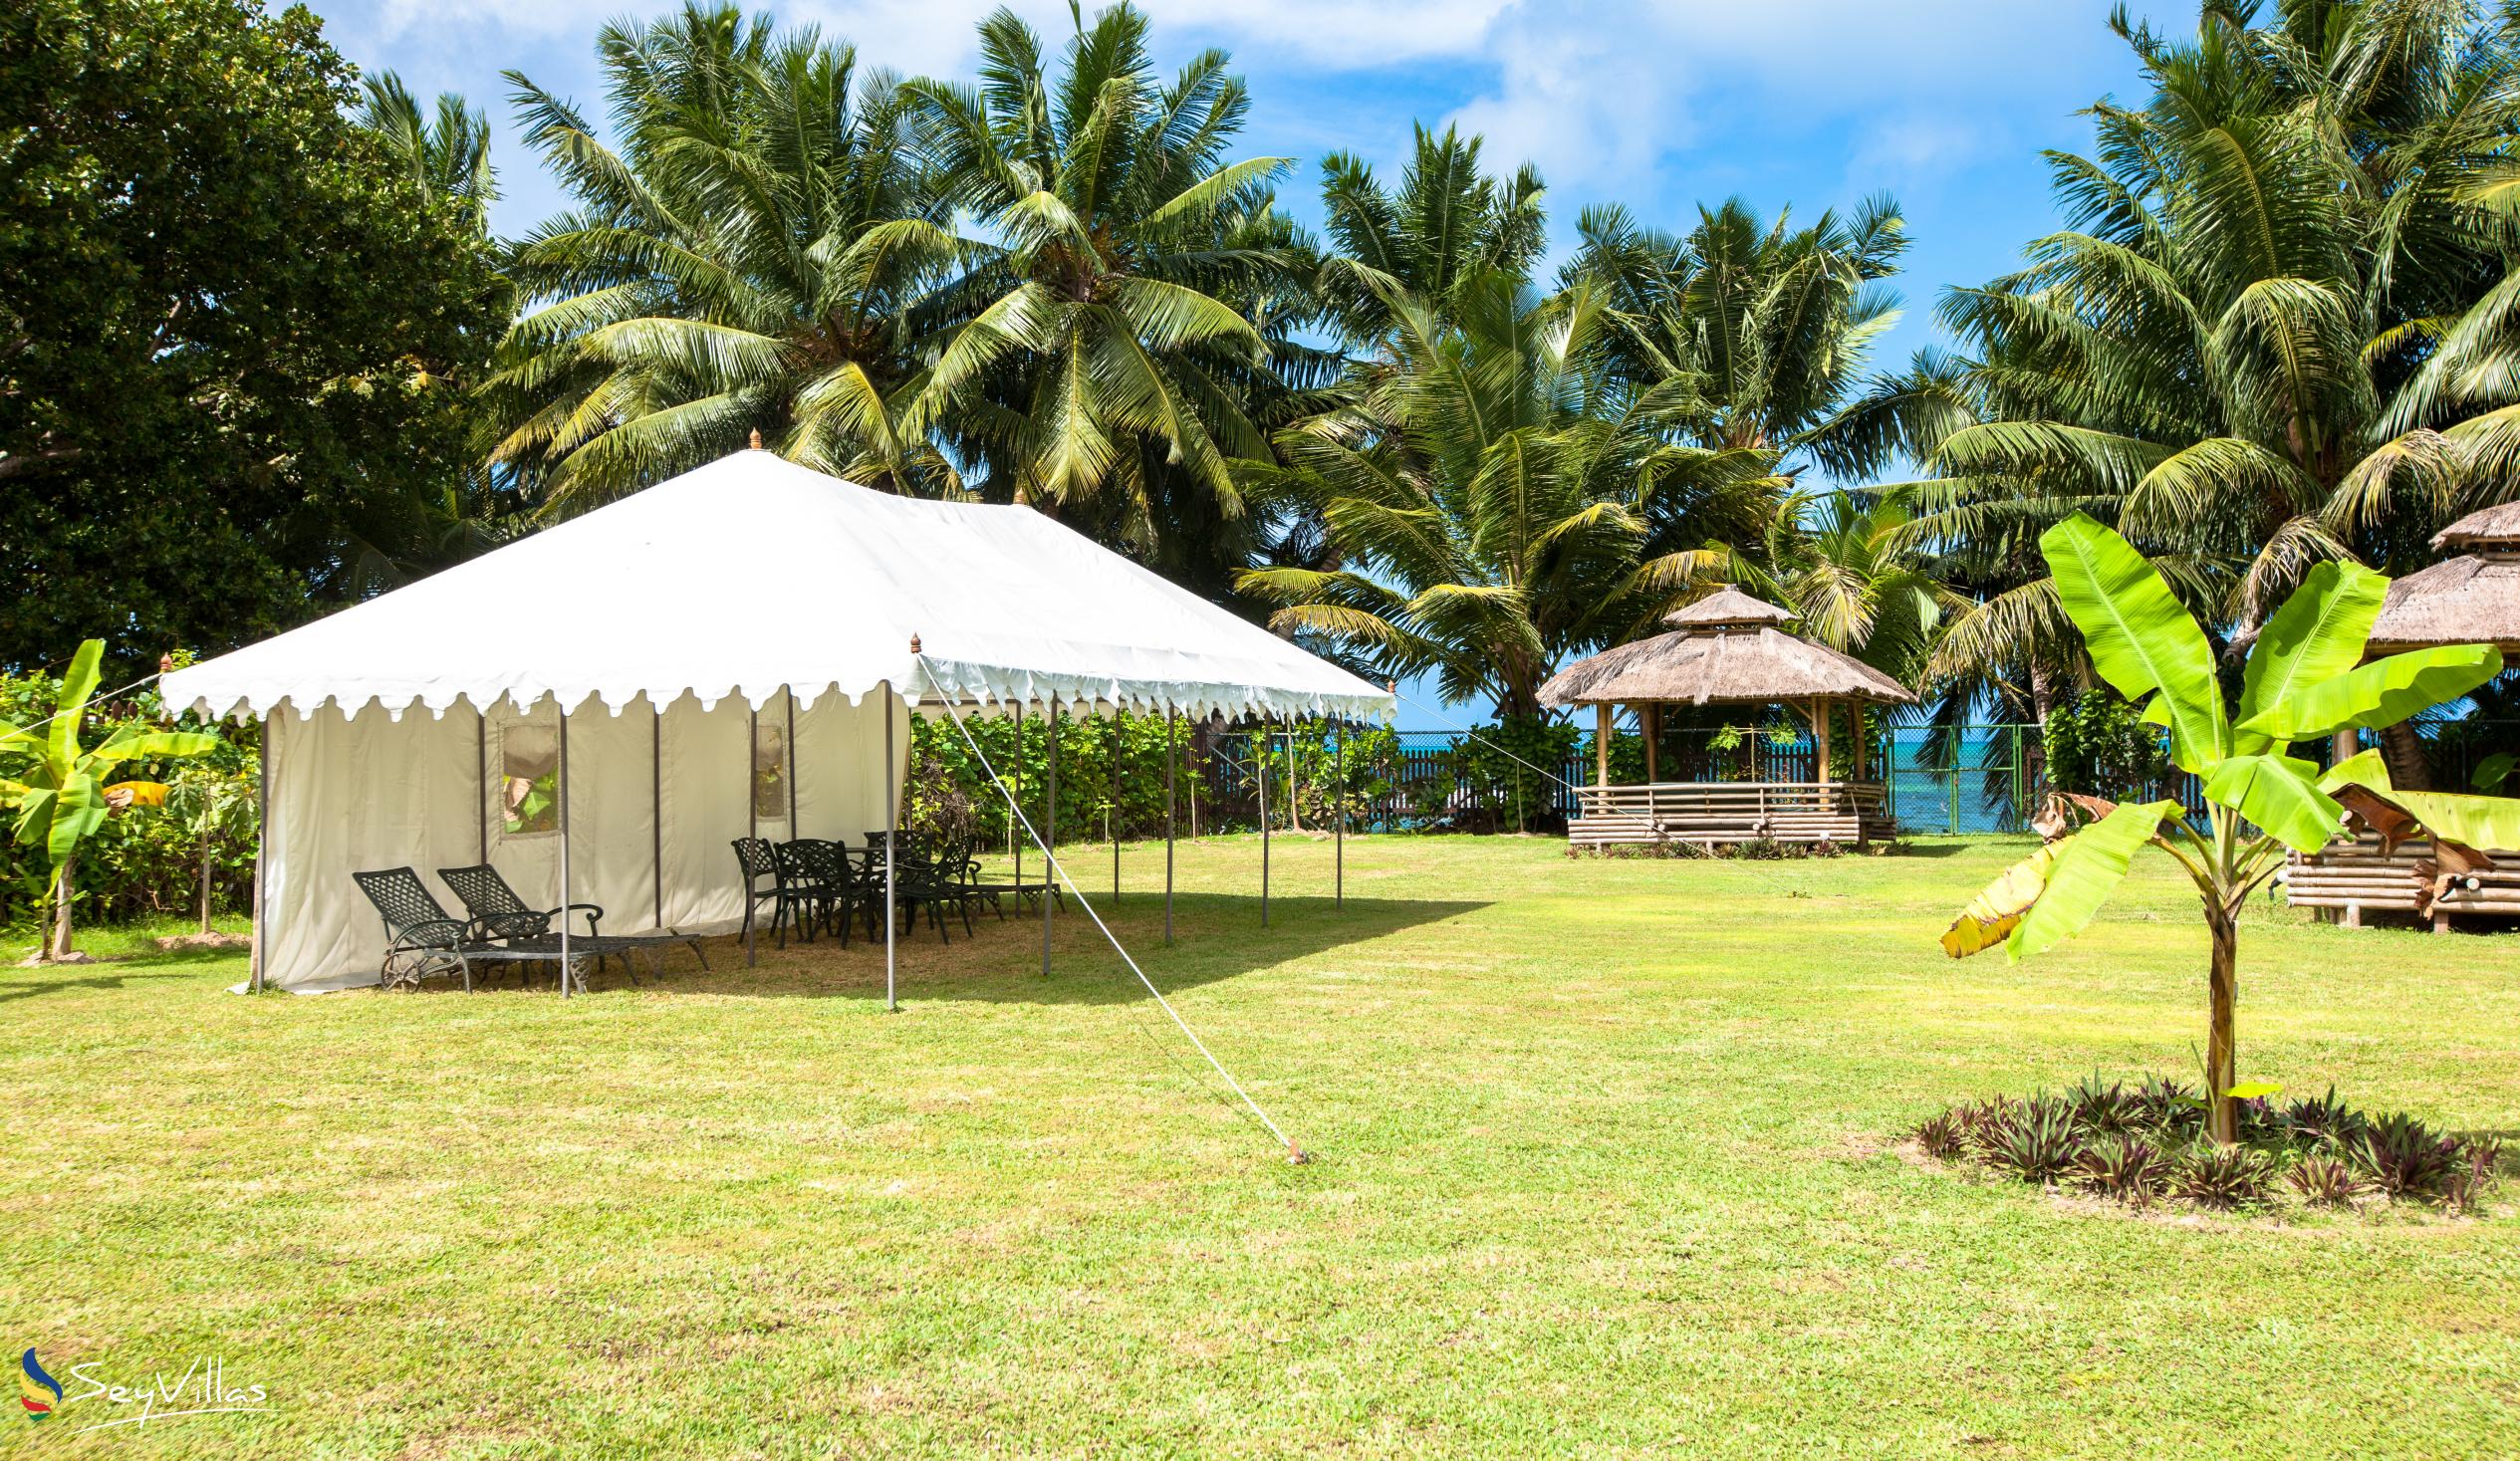 Foto 8: Le Relax Beach Resort - Aussenbereich - Praslin (Seychellen)